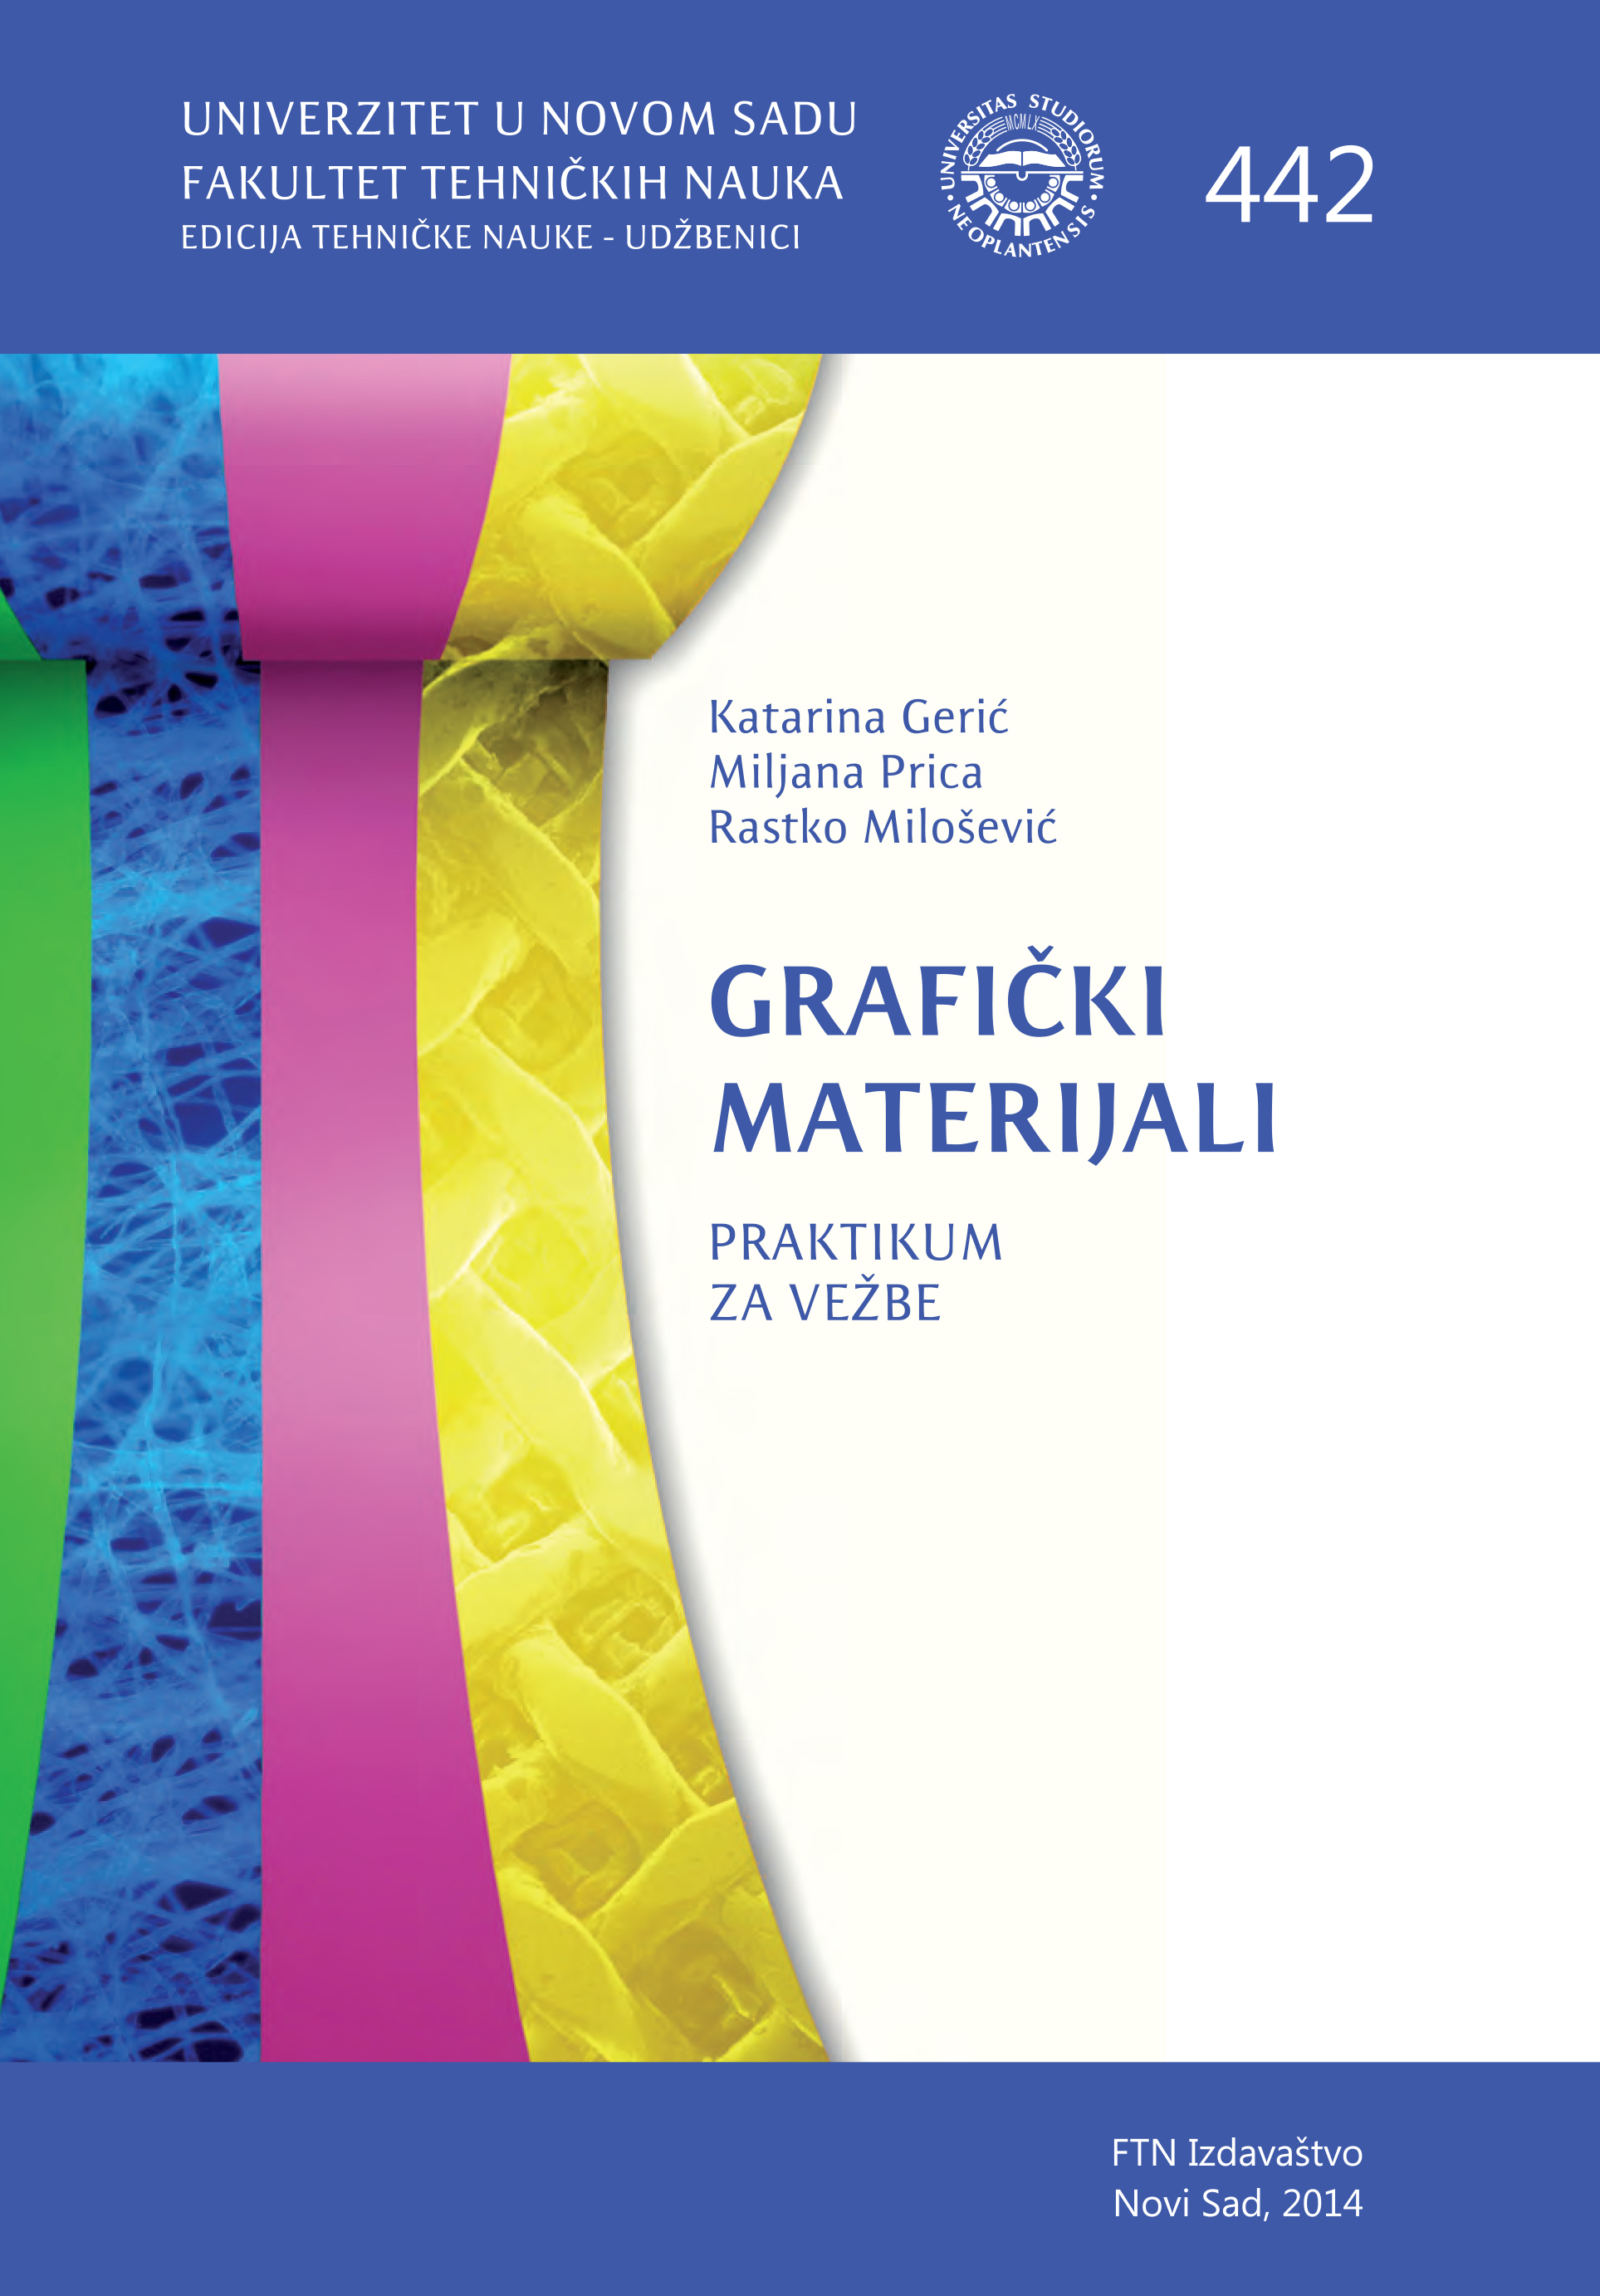 Grafički materijali - praktikum